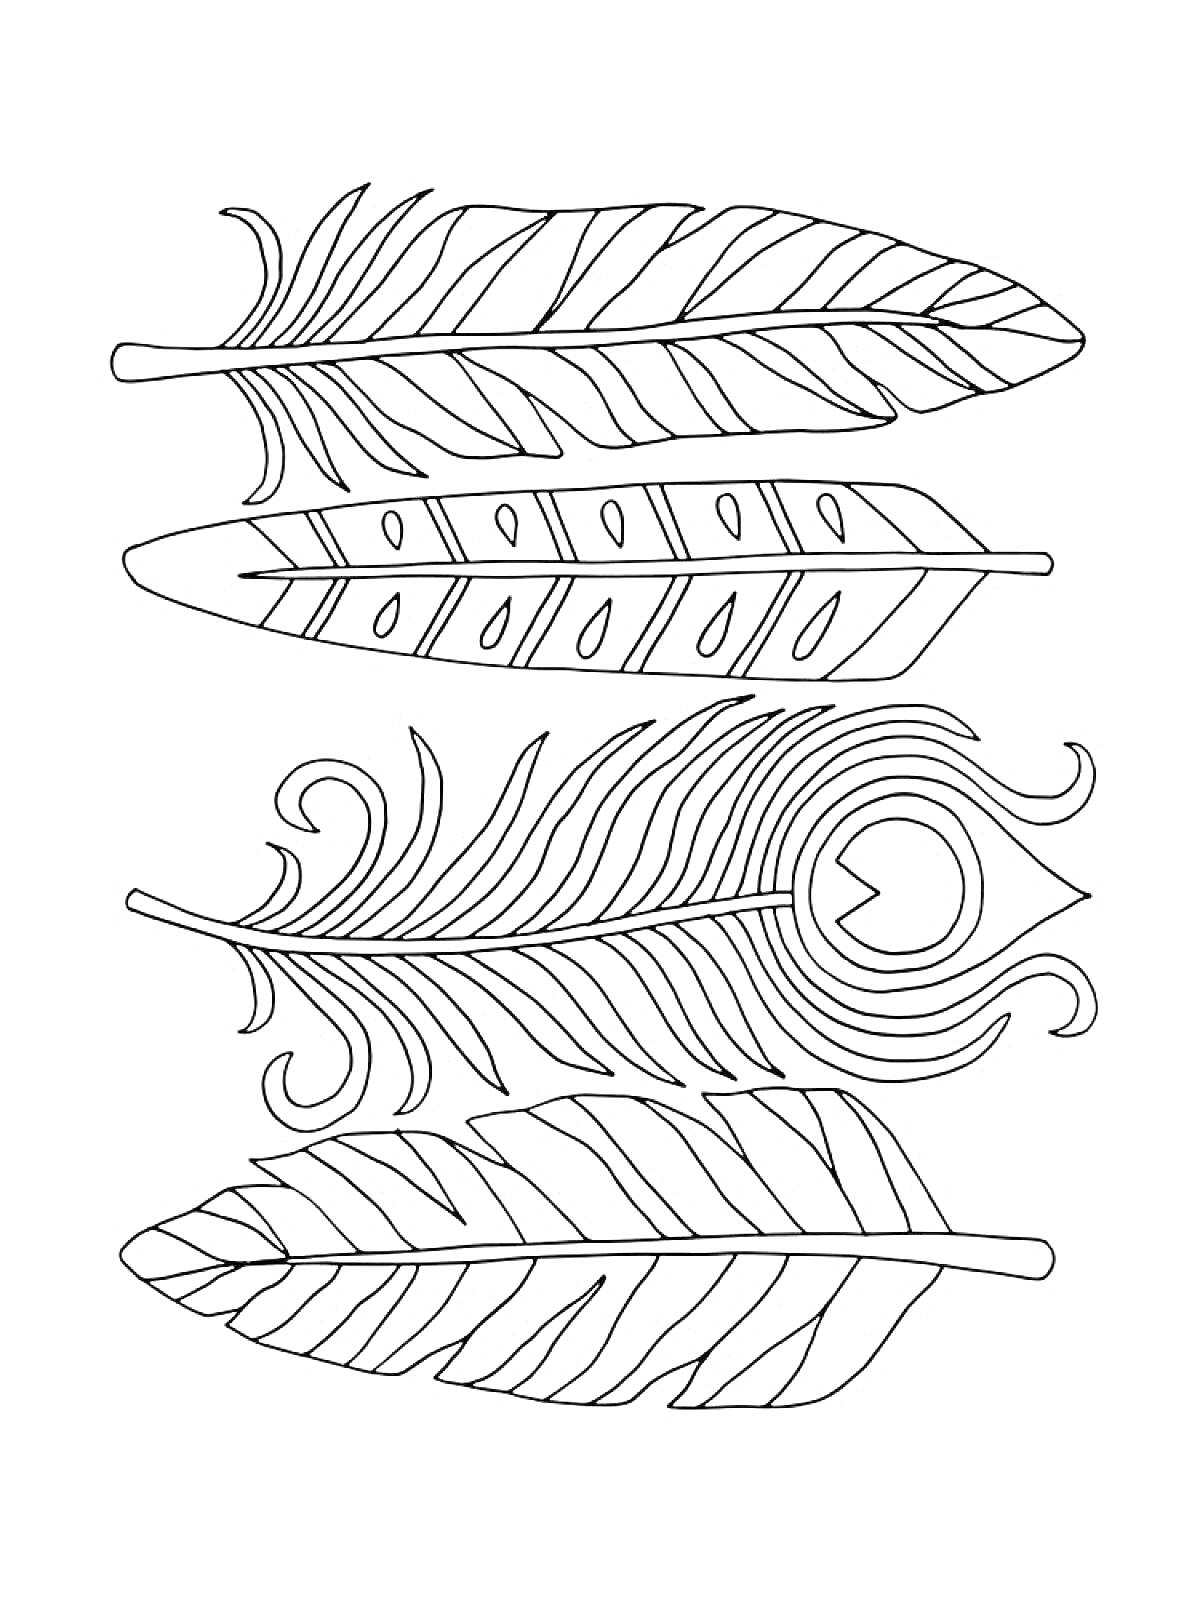 Раскраска Четыре пера с различным узором, включая декоративное перо с завитками и глазком